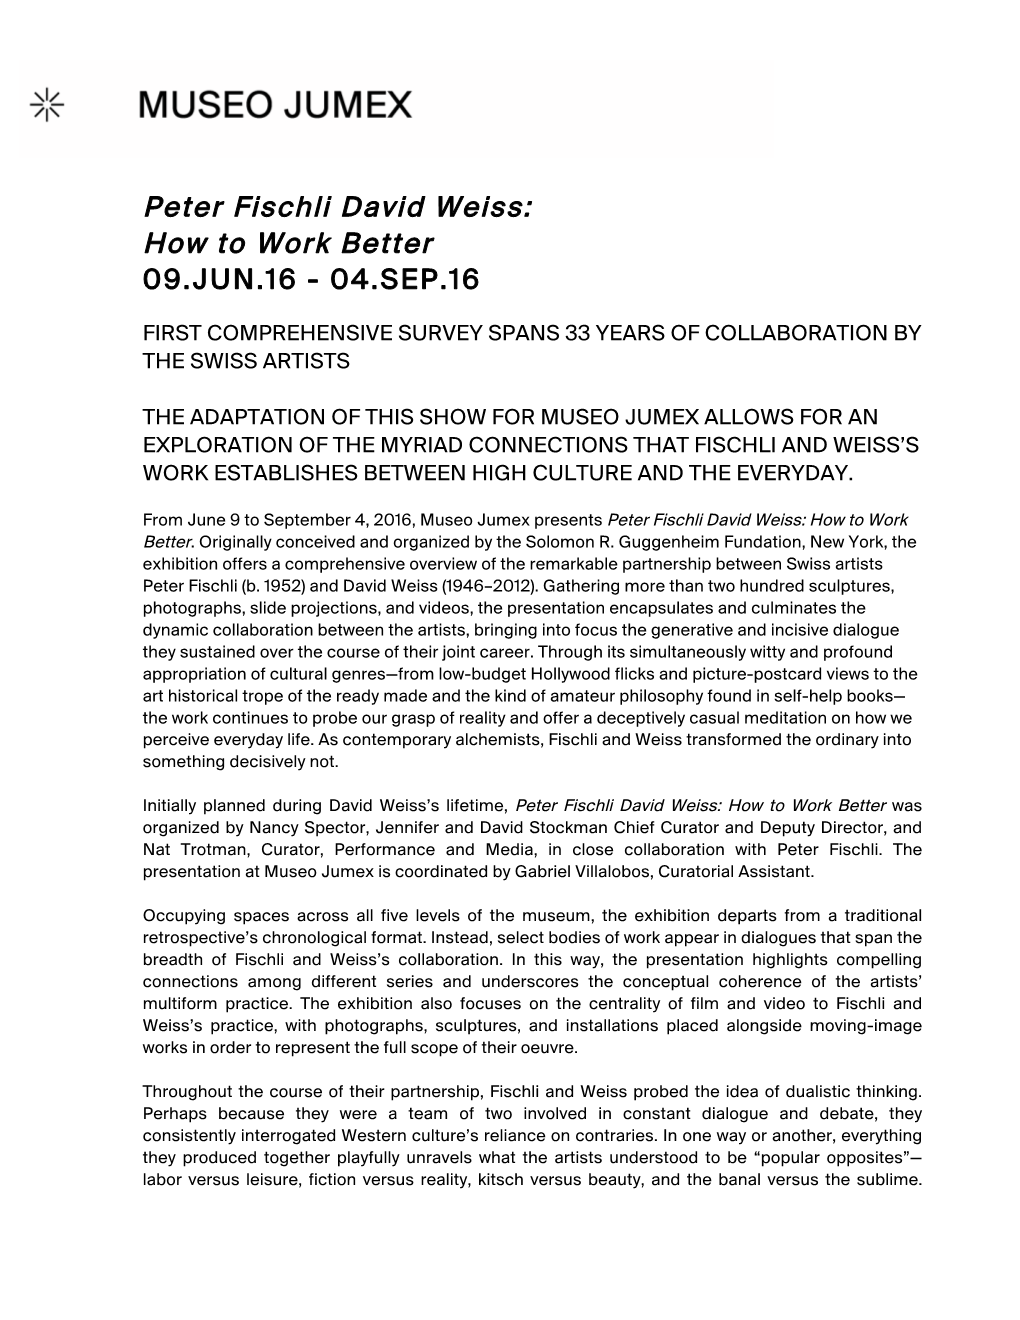 Peter Fischli David Weiss: How to Work Better 09.JUN.16 - 04.SEP.16